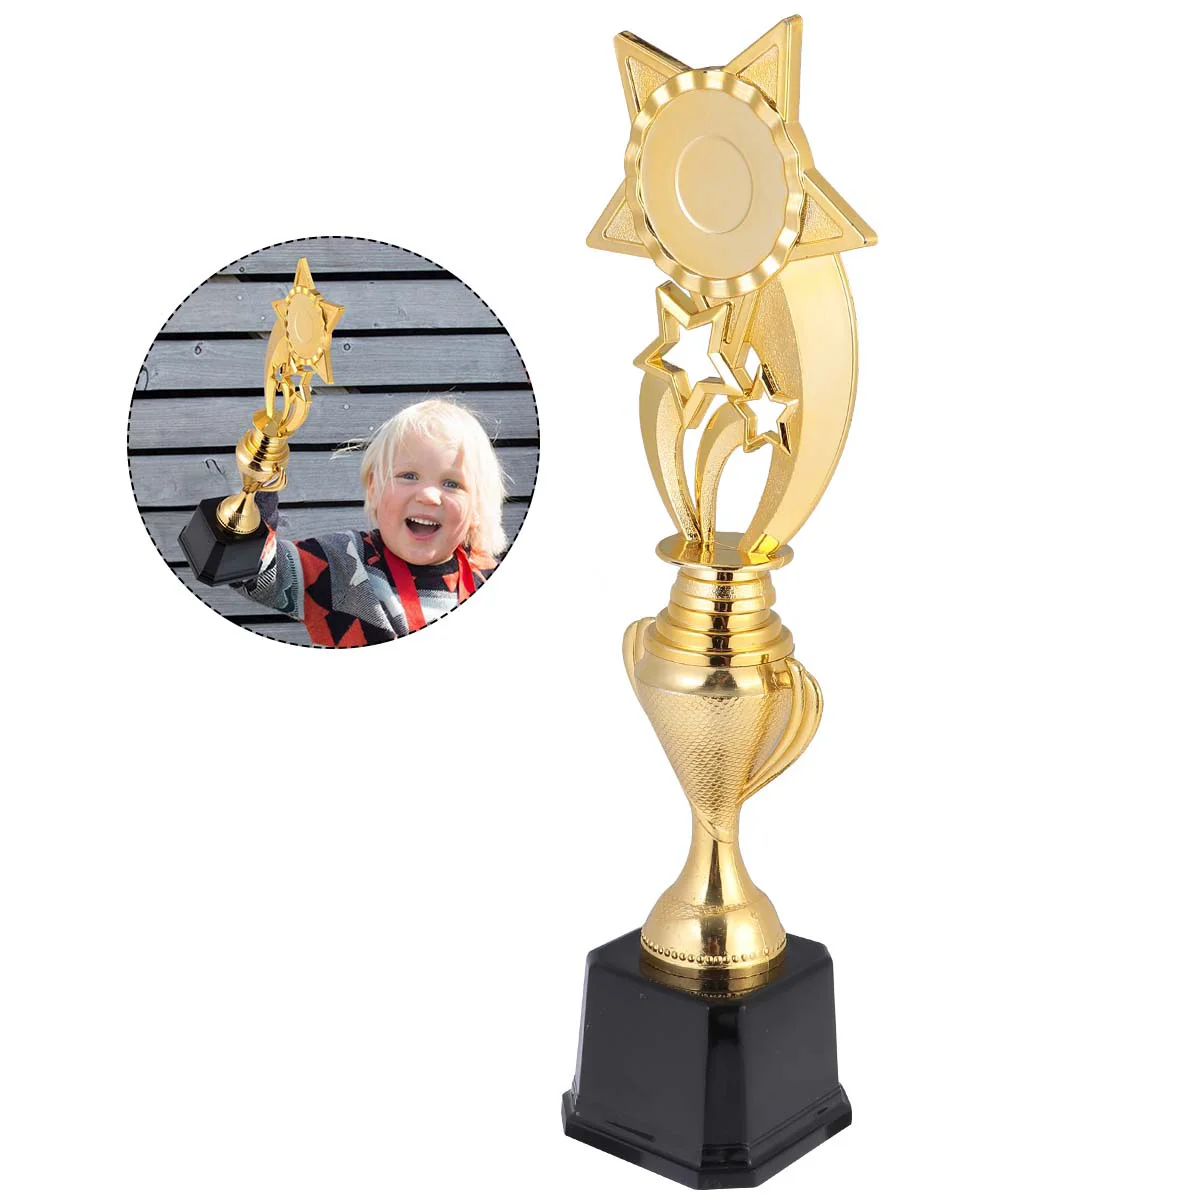 

Детская награда трофей креативные спортивные детские награды форма игра достижения церемония футбольные медали